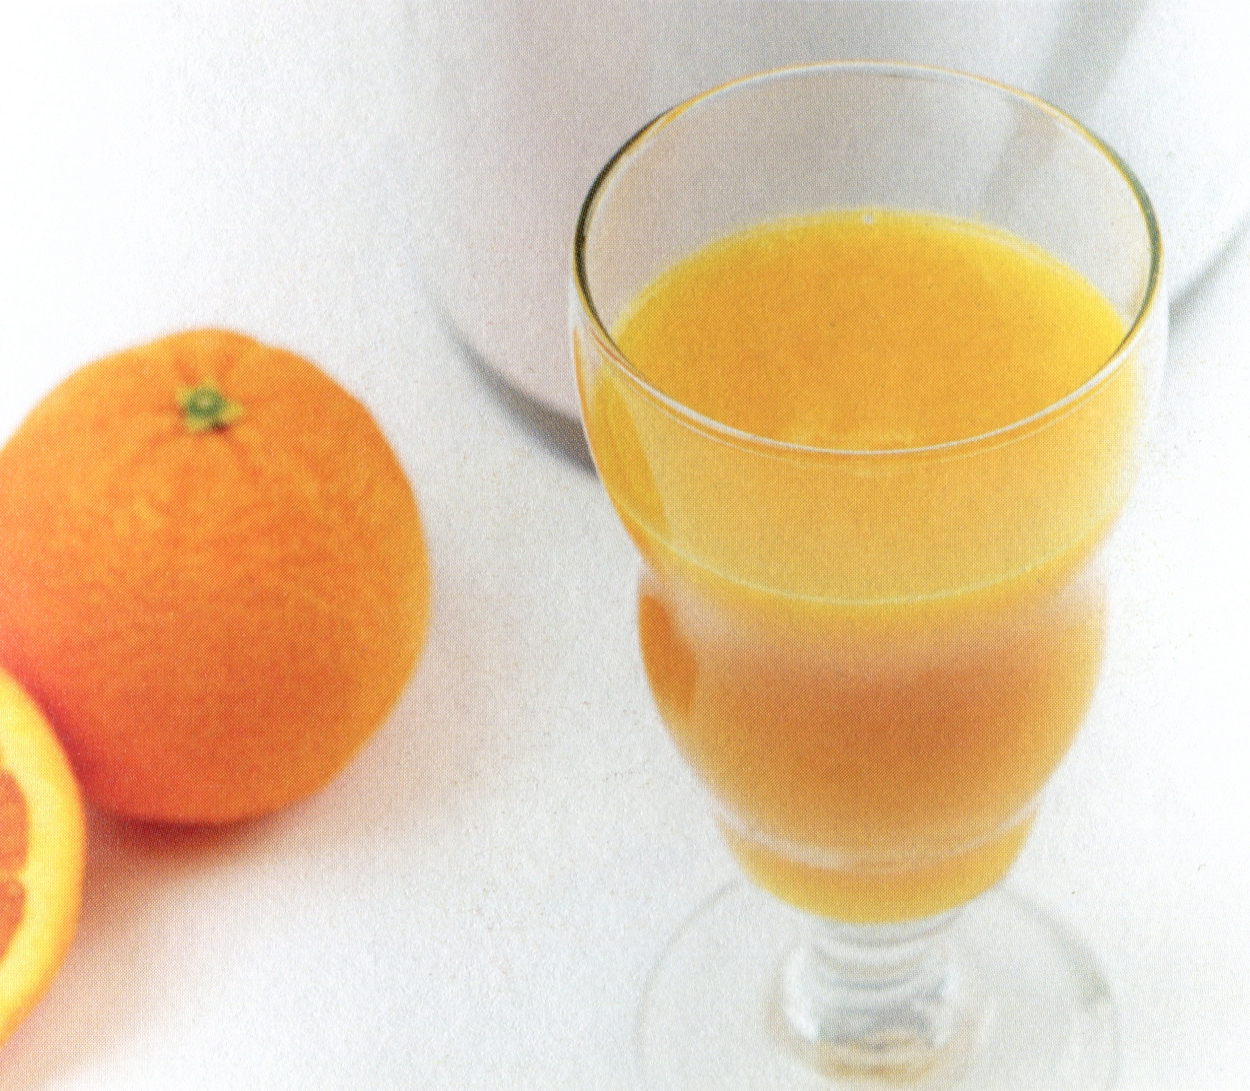 Апельсиновый сок полезен для кожи